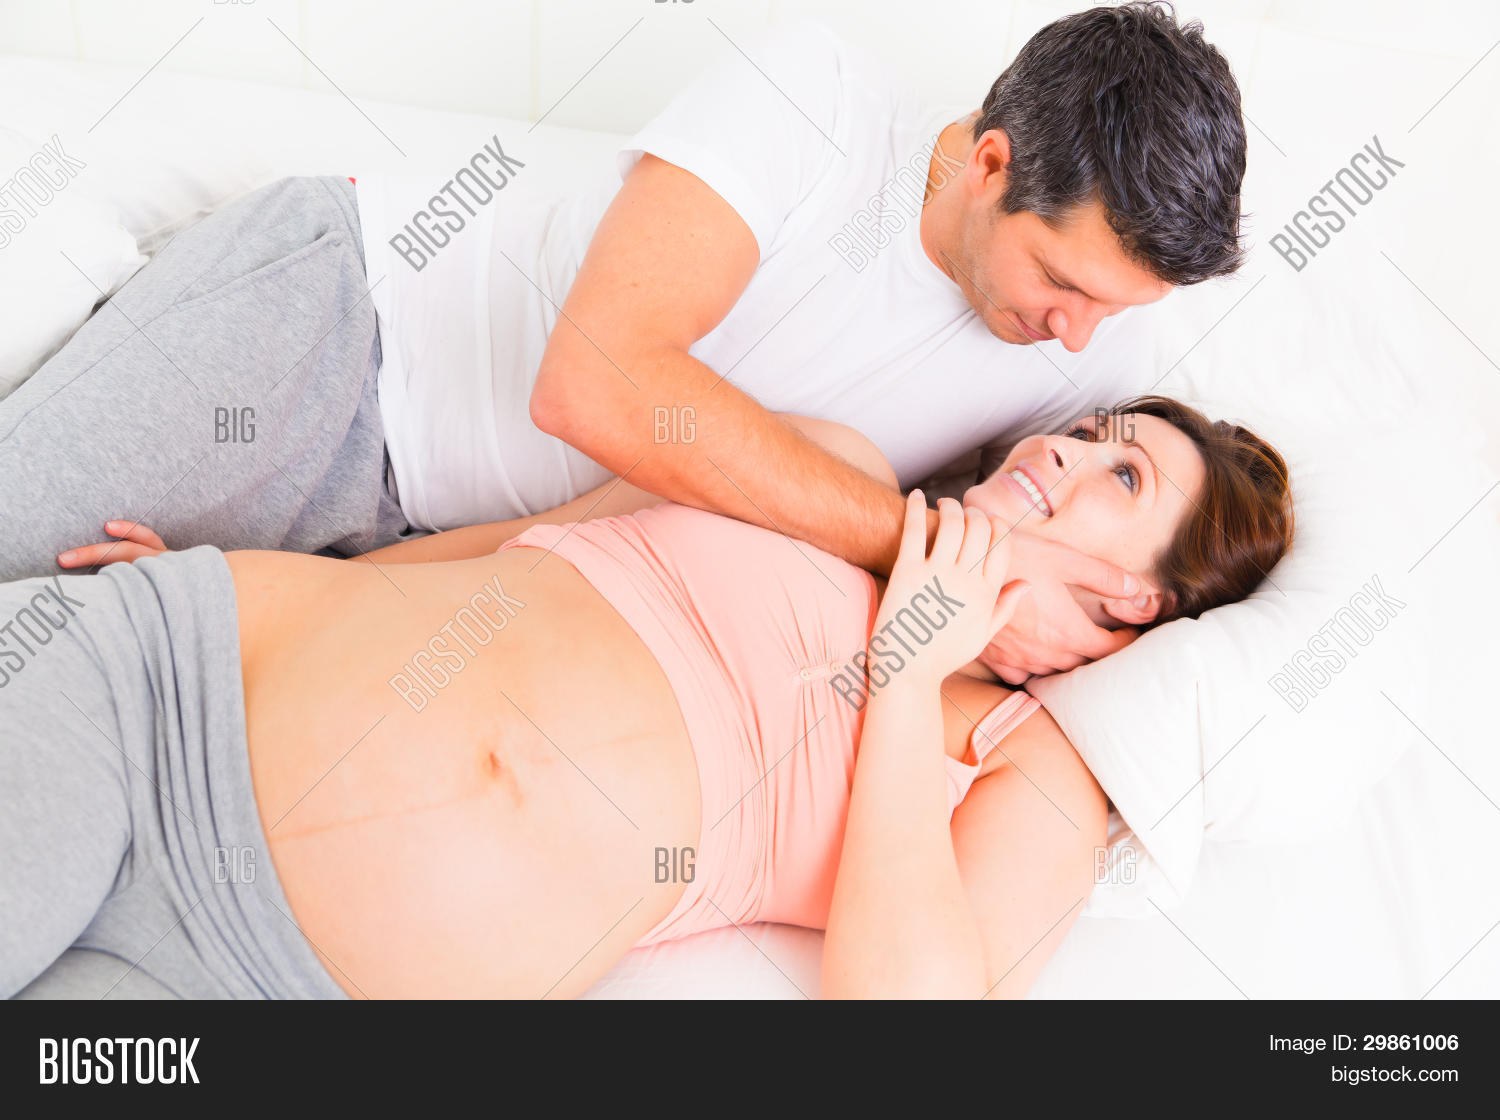 во время беременности может быть оргазм фото 33